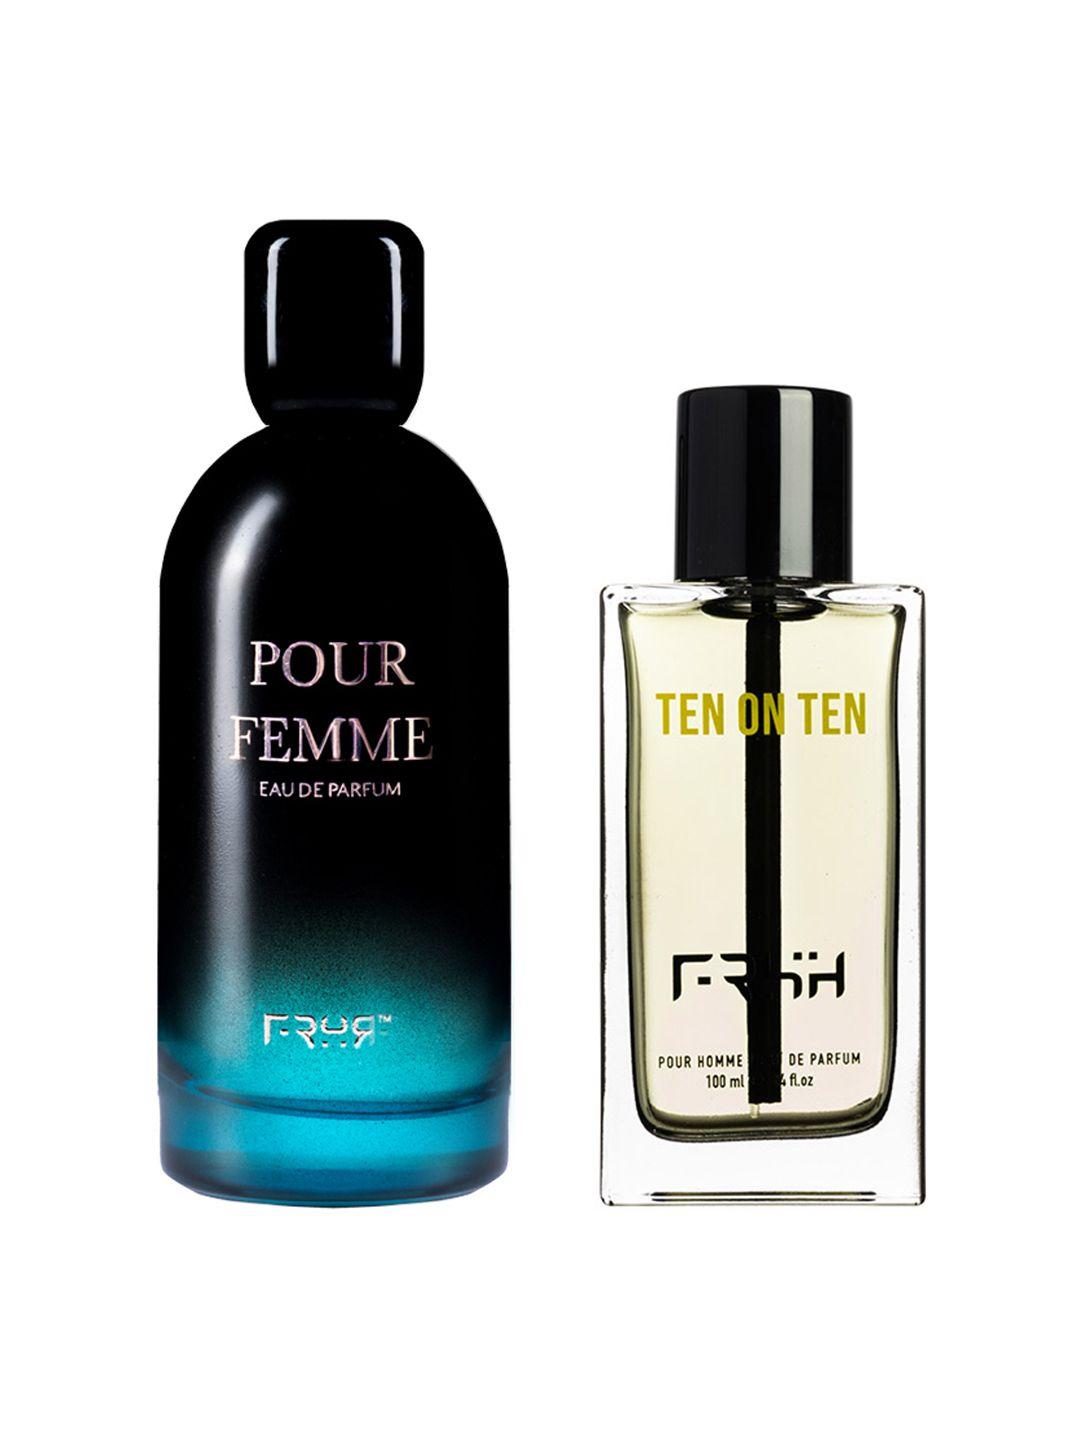 frsh set of men ten on ten pour homme 100 ml & women pour femme eau de parfum 110 ml